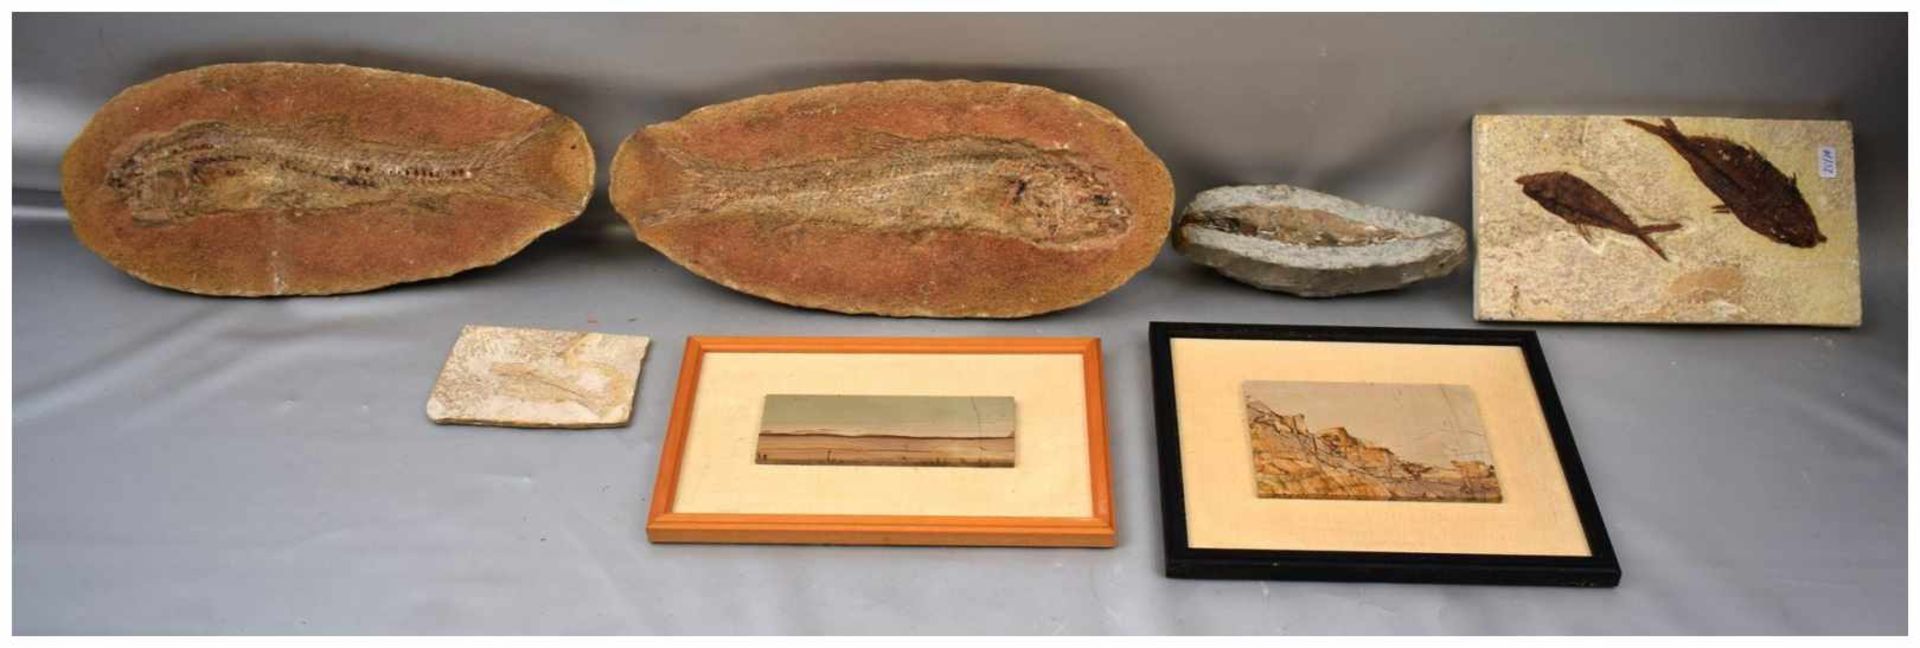 Sieben Versteinerungen Fische und andere Tiere, verschiedene Größen, mehrere Millionen Jahre alt